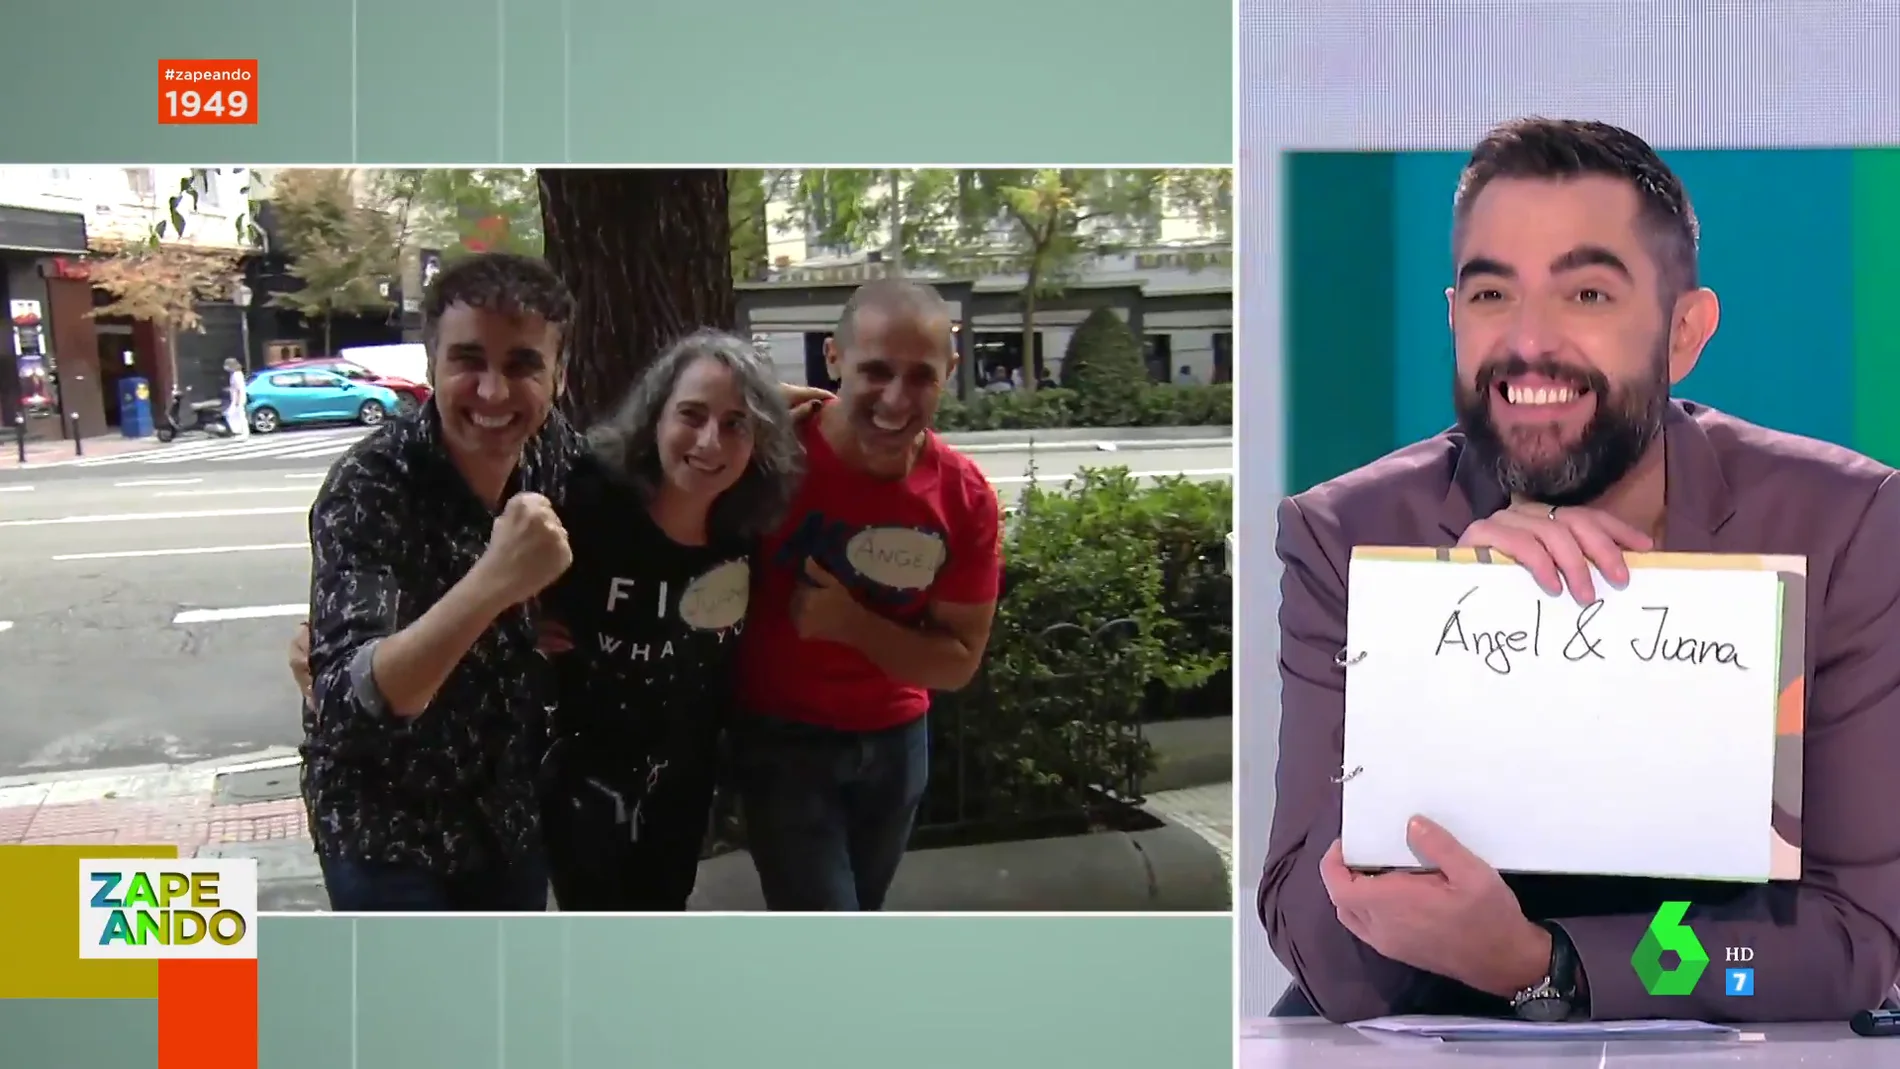  "¡Viva el poliamor!": Canco Rodríguez sorprende a los zapeadores presentando a sus parejas en directo